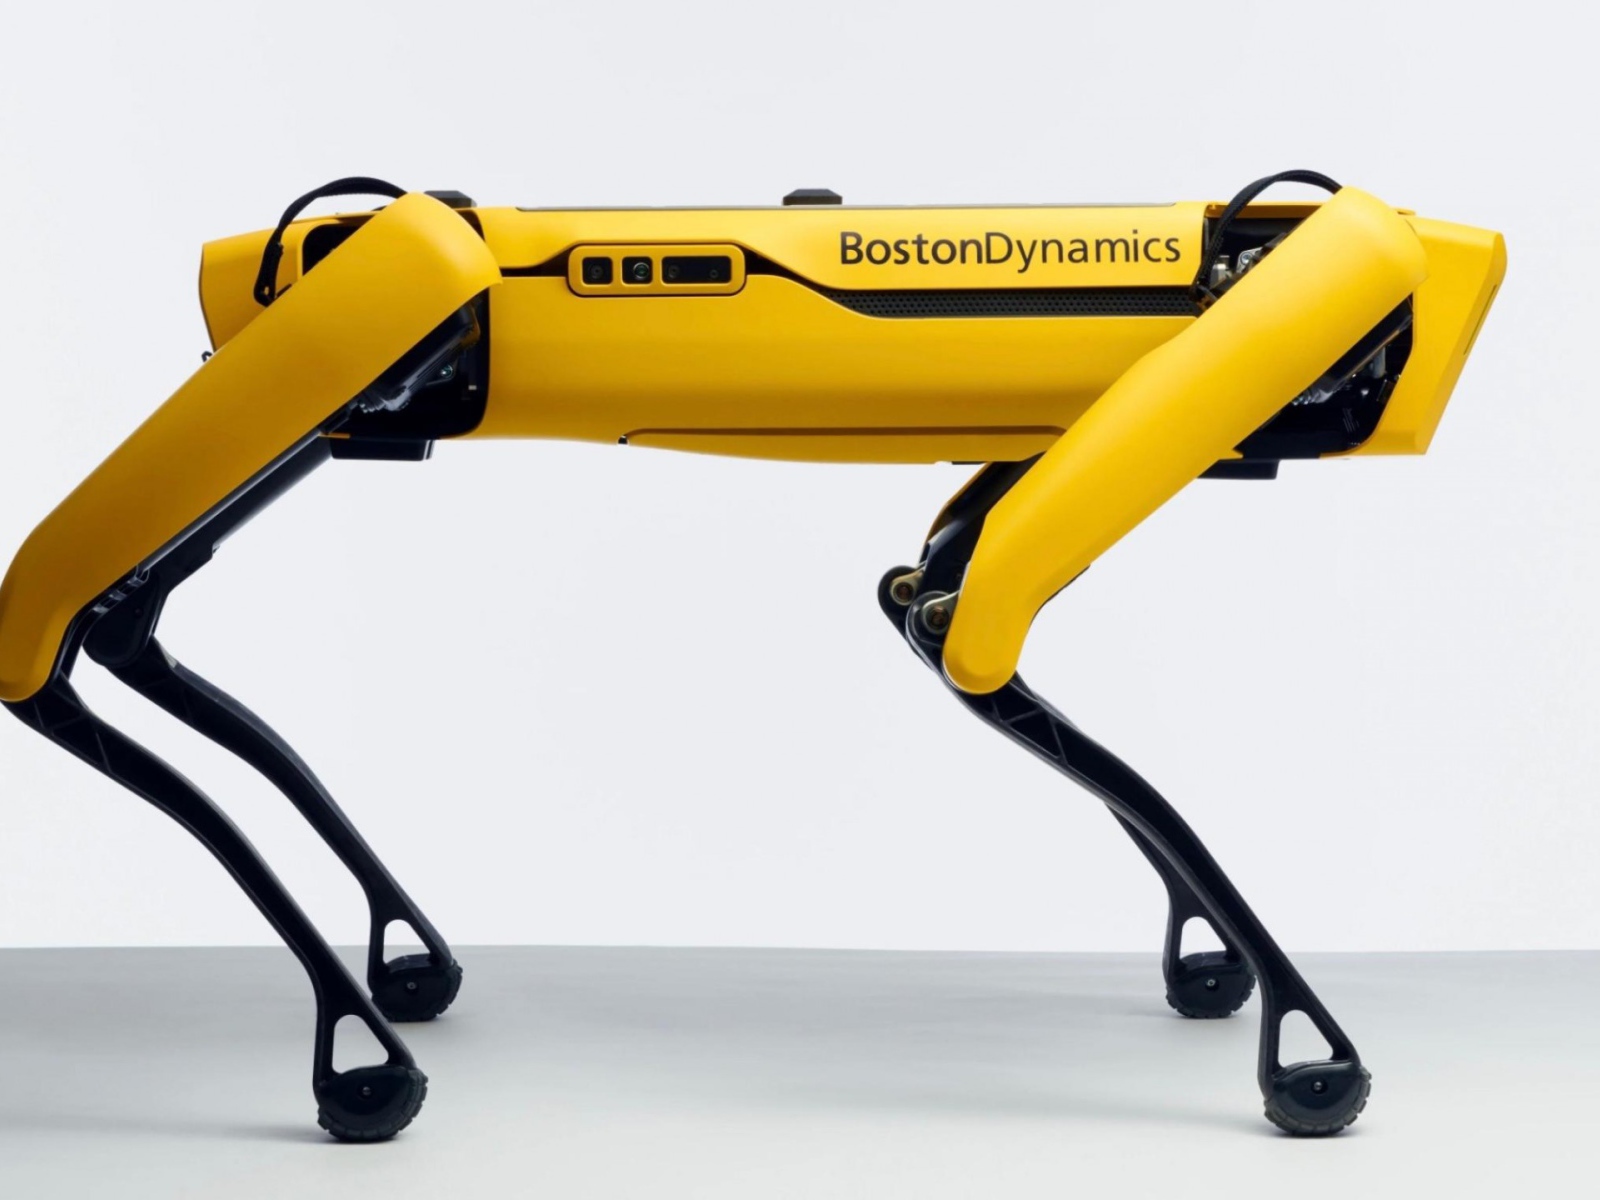 Yellow four-legged spot robot on a white background